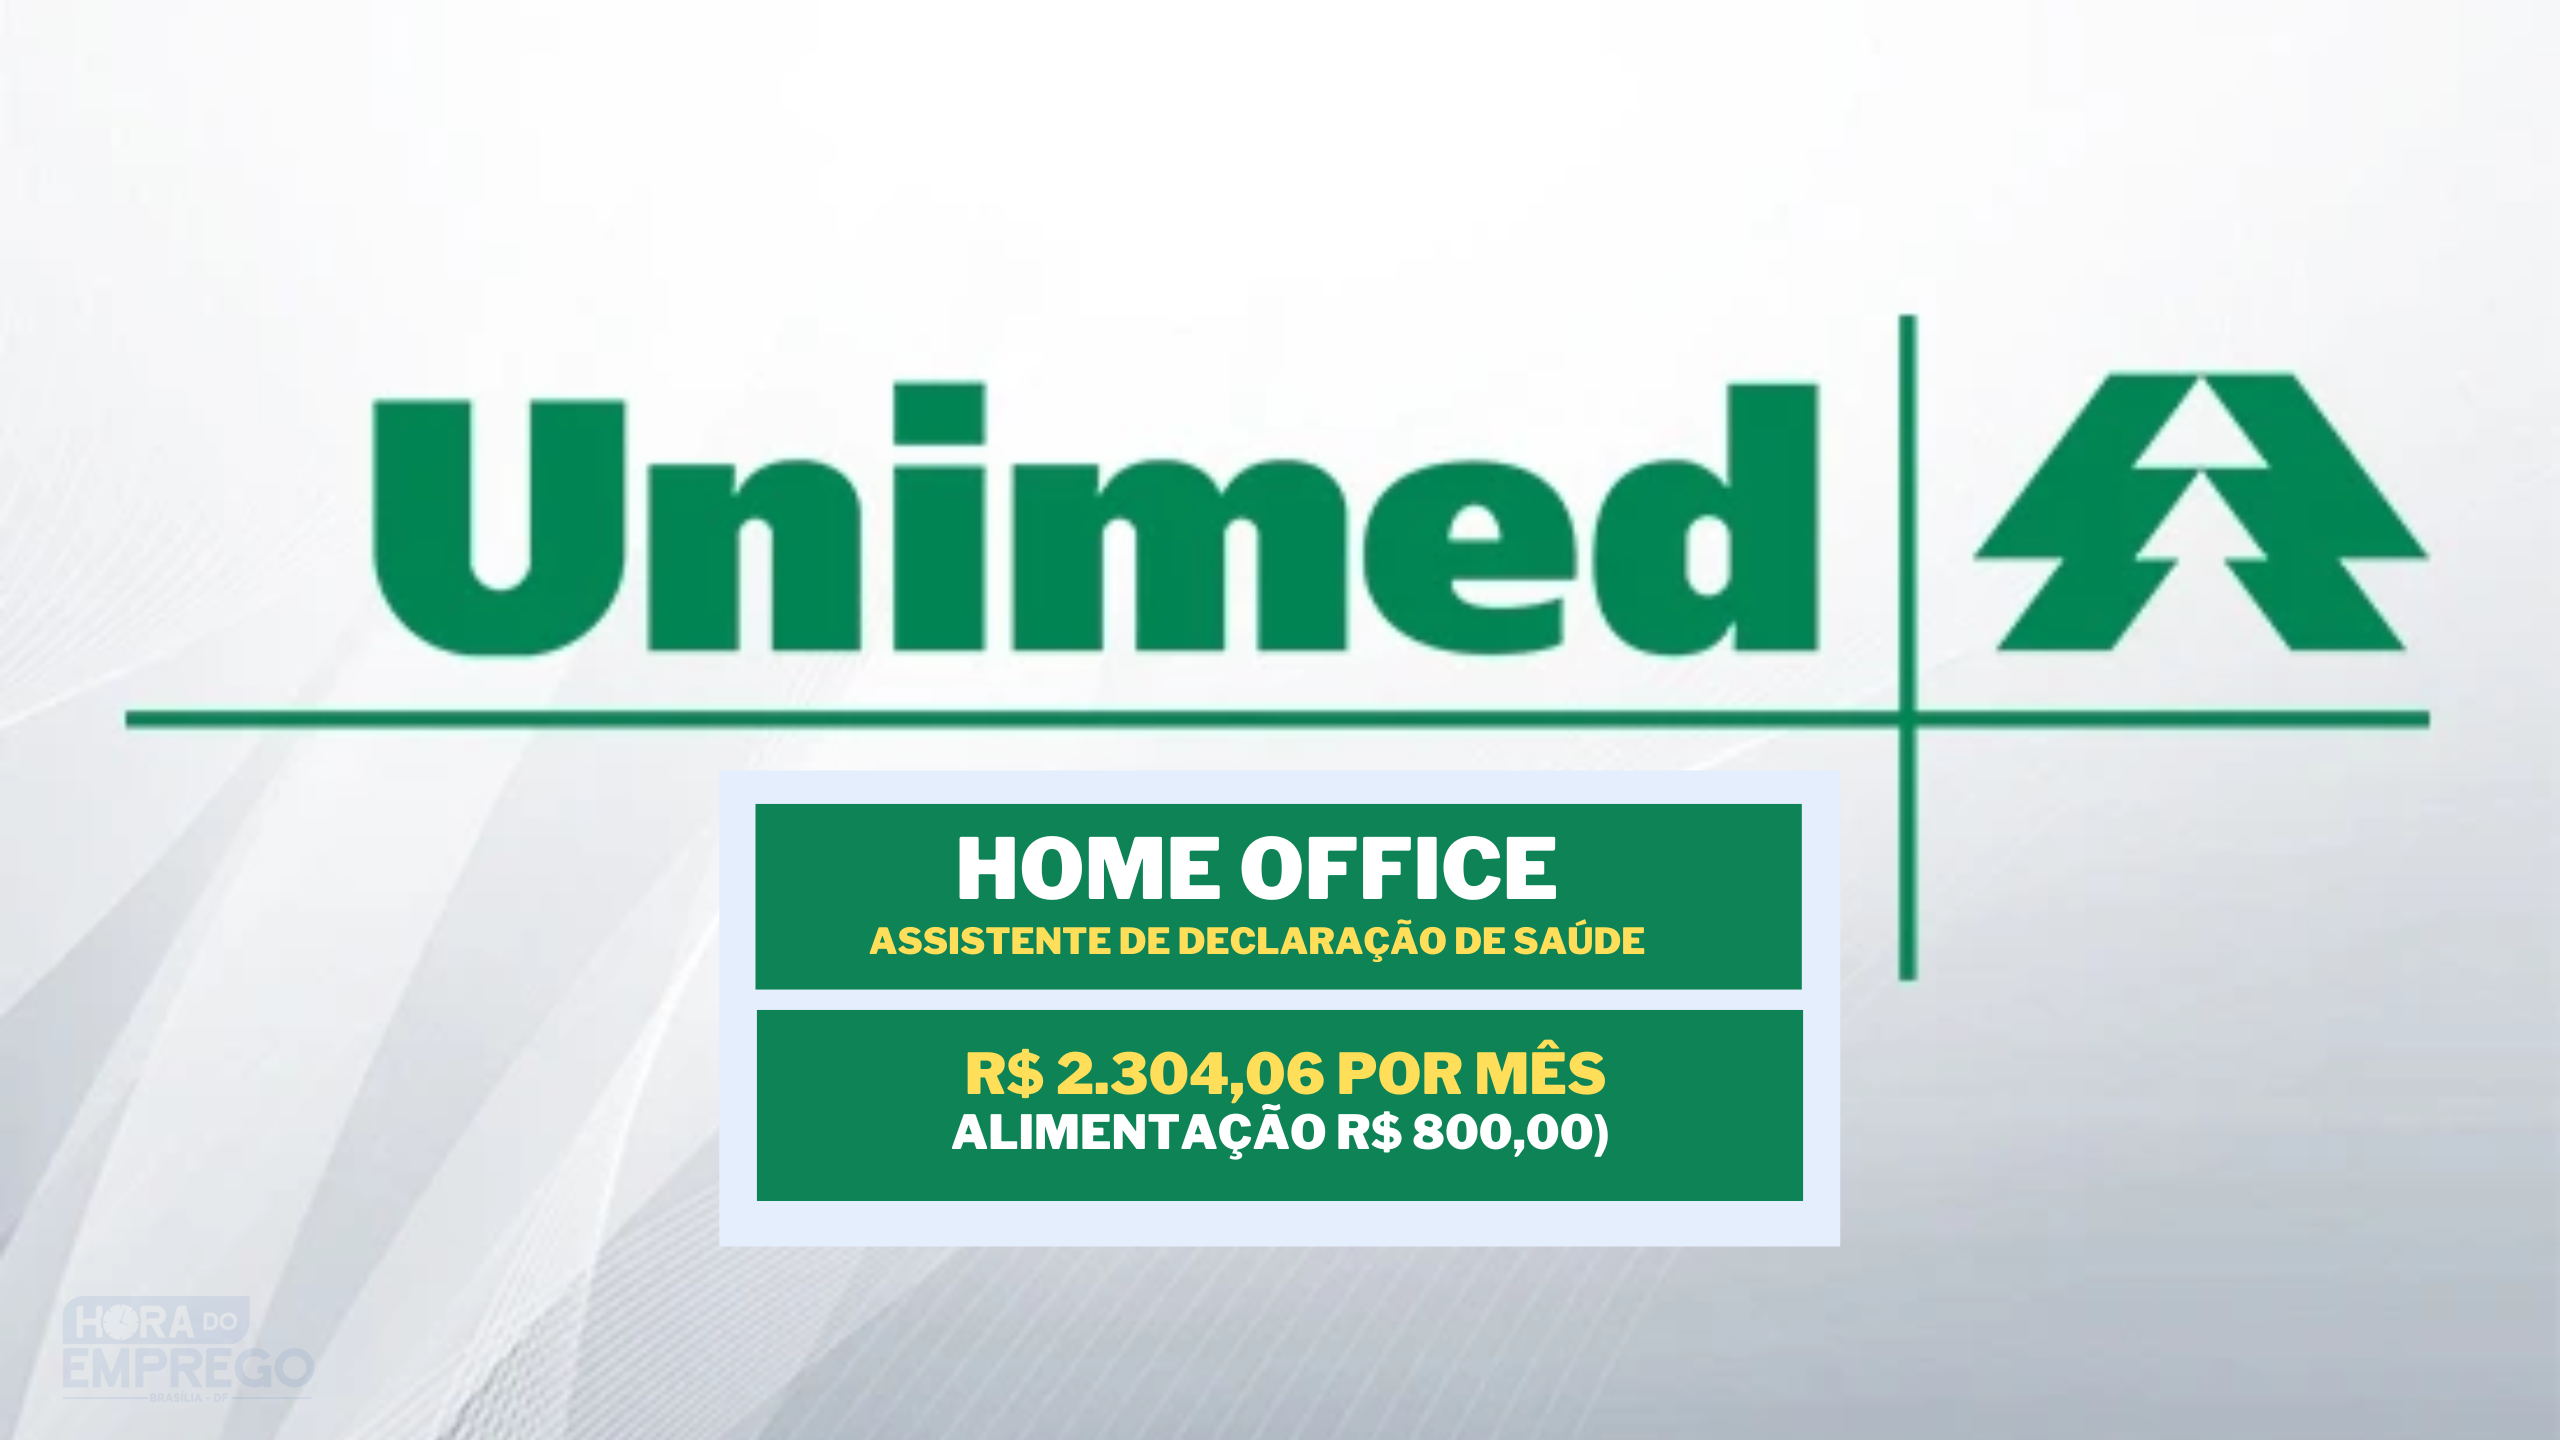 Sem experiência! Unimed abriu vaga HOME OFFICE com salário de R$ 2.304,06 para Assistente de Declaração de Saúde